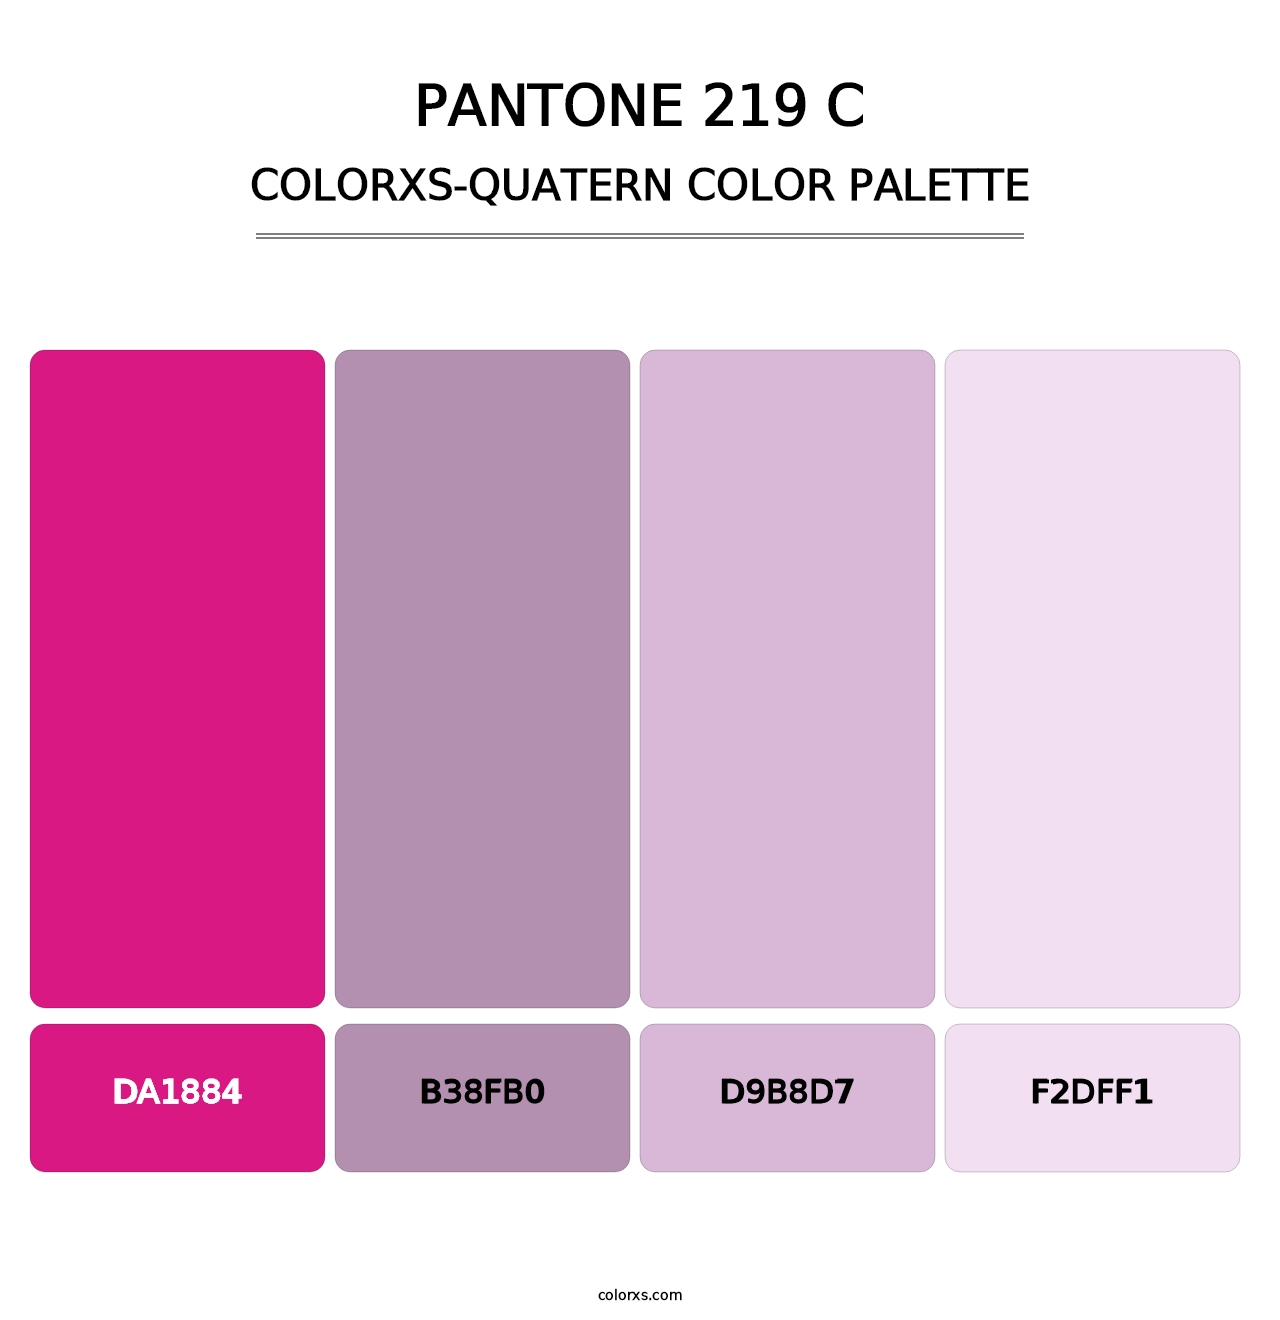 PANTONE 219 C - Colorxs Quatern Palette